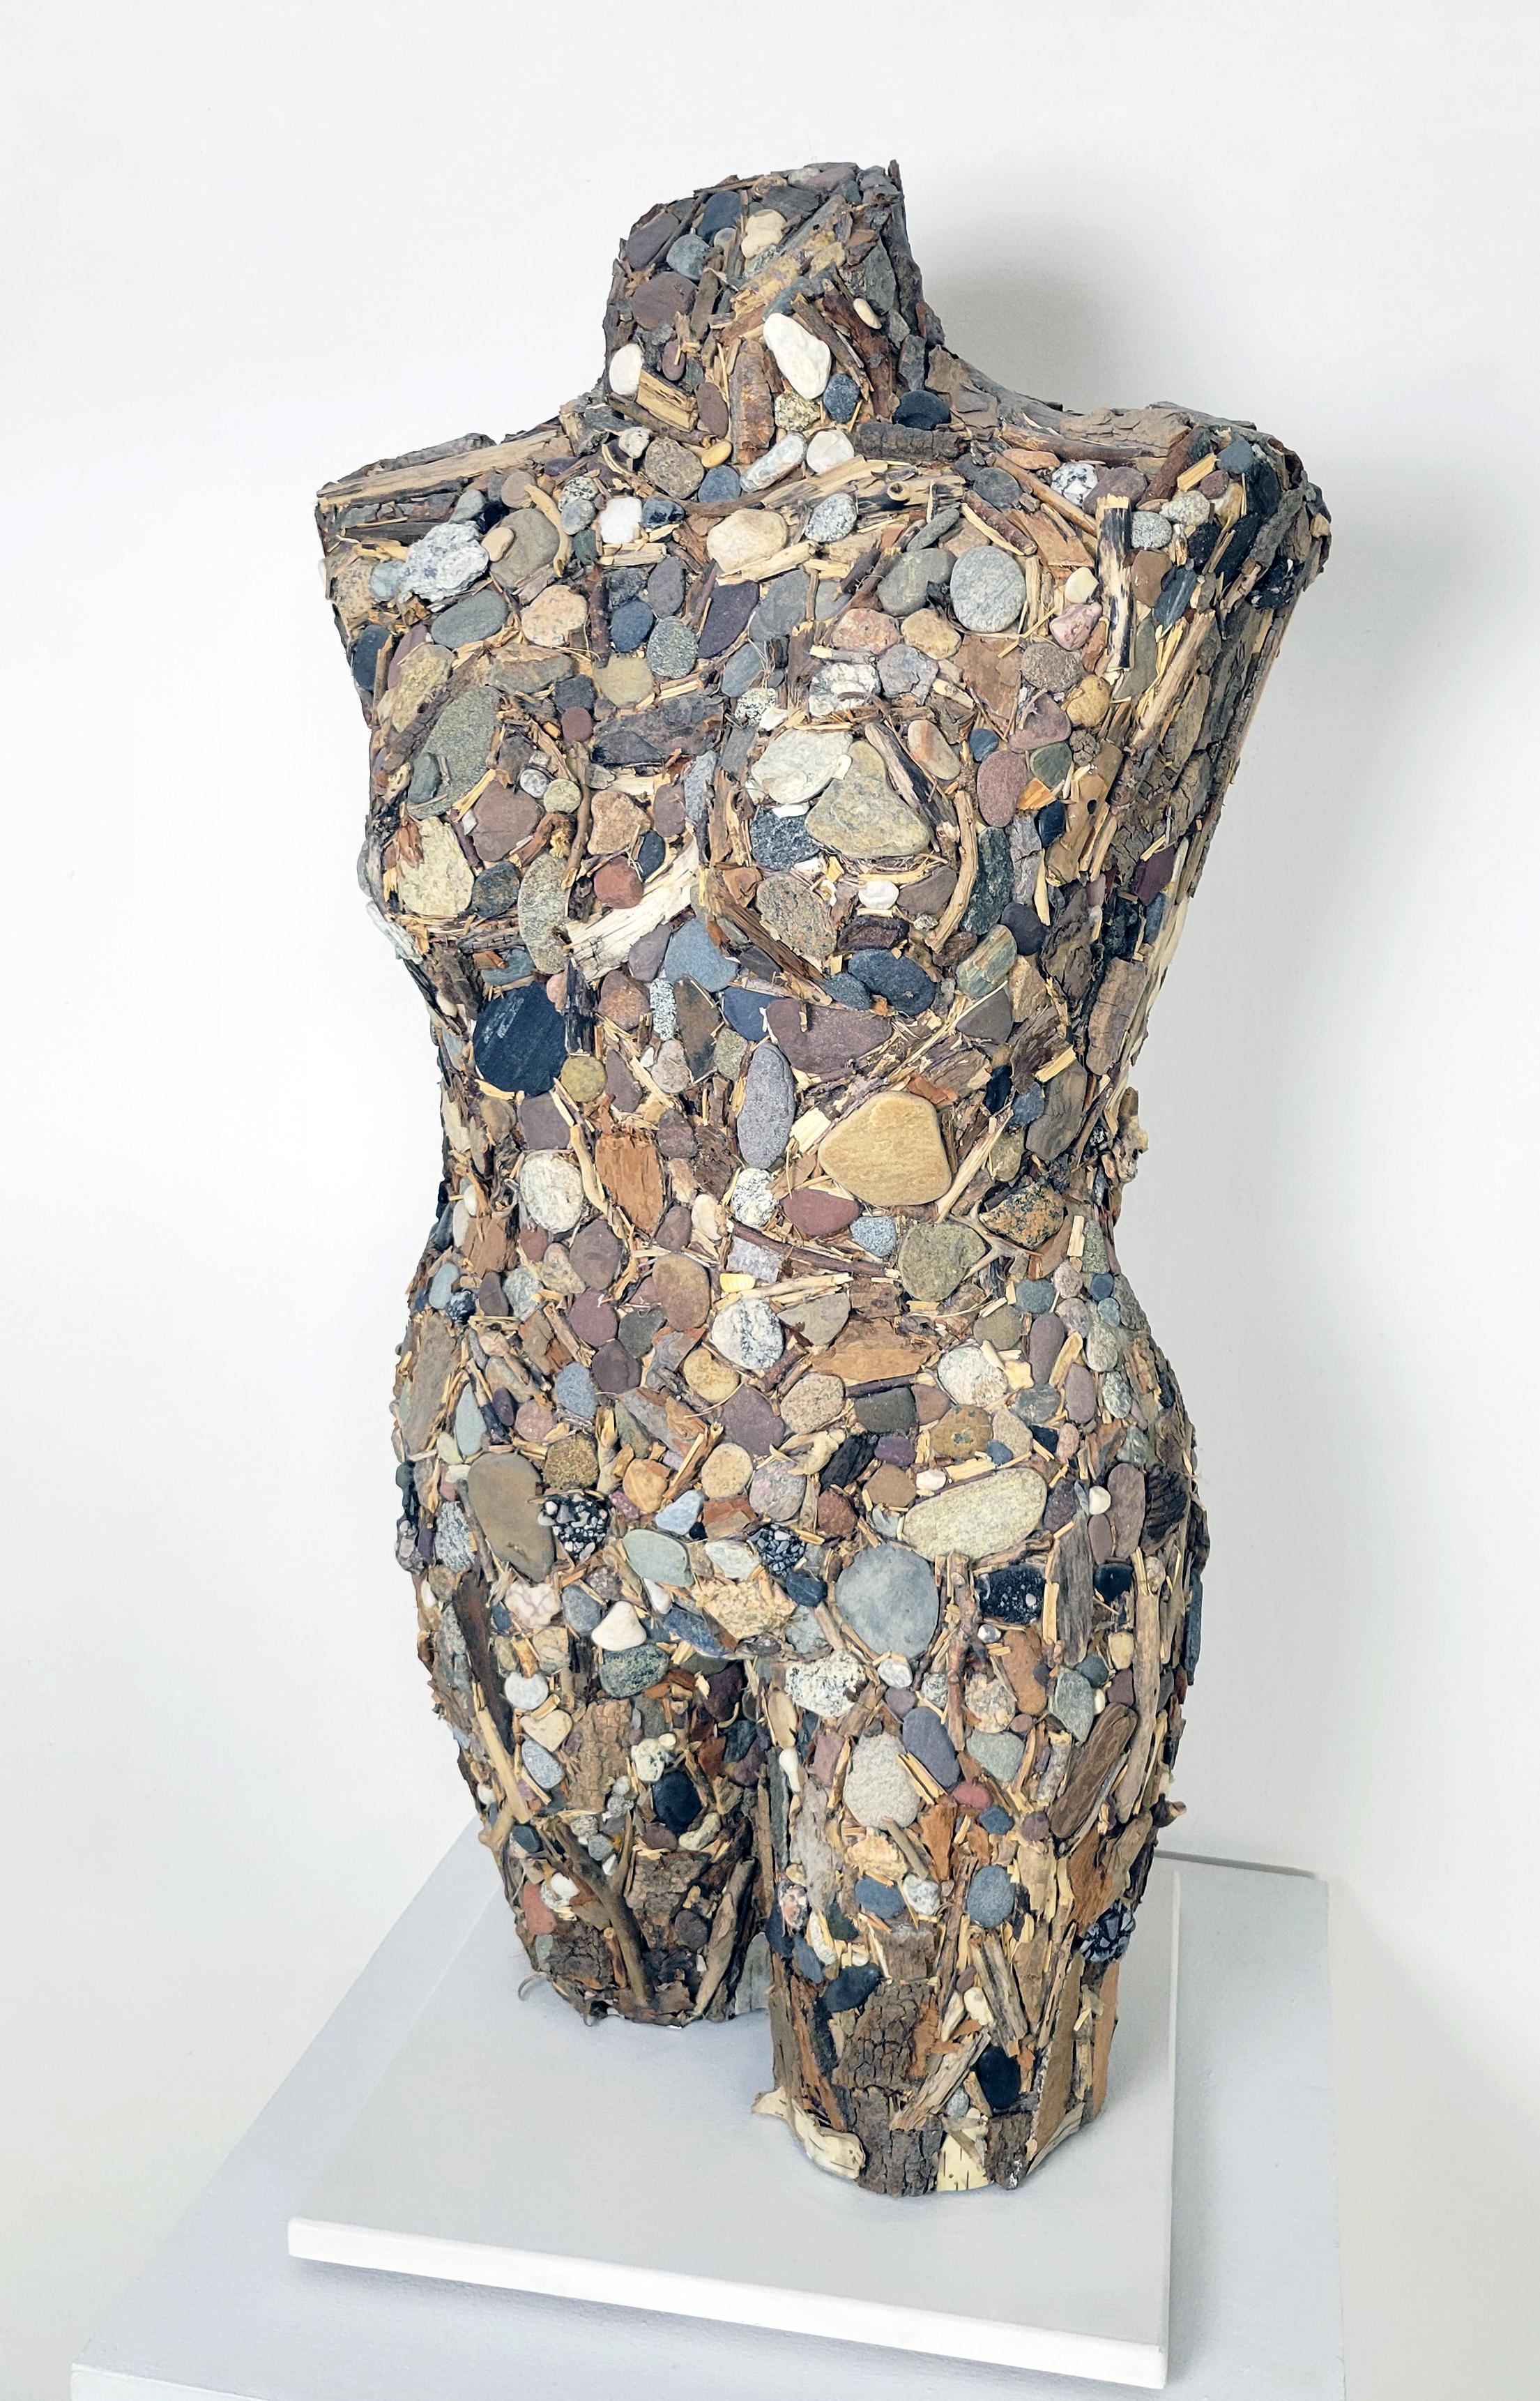 Diese Skulptur aus Linda Steins "I am the Environment"-Serie untersucht die Beziehung der Künstlerin zur Erde und thematisiert die Verbundenheit aller Lebewesen miteinander.  Diese Skulptur ist aus gefundenem Stein, Holz und Stöcken in angenehmen